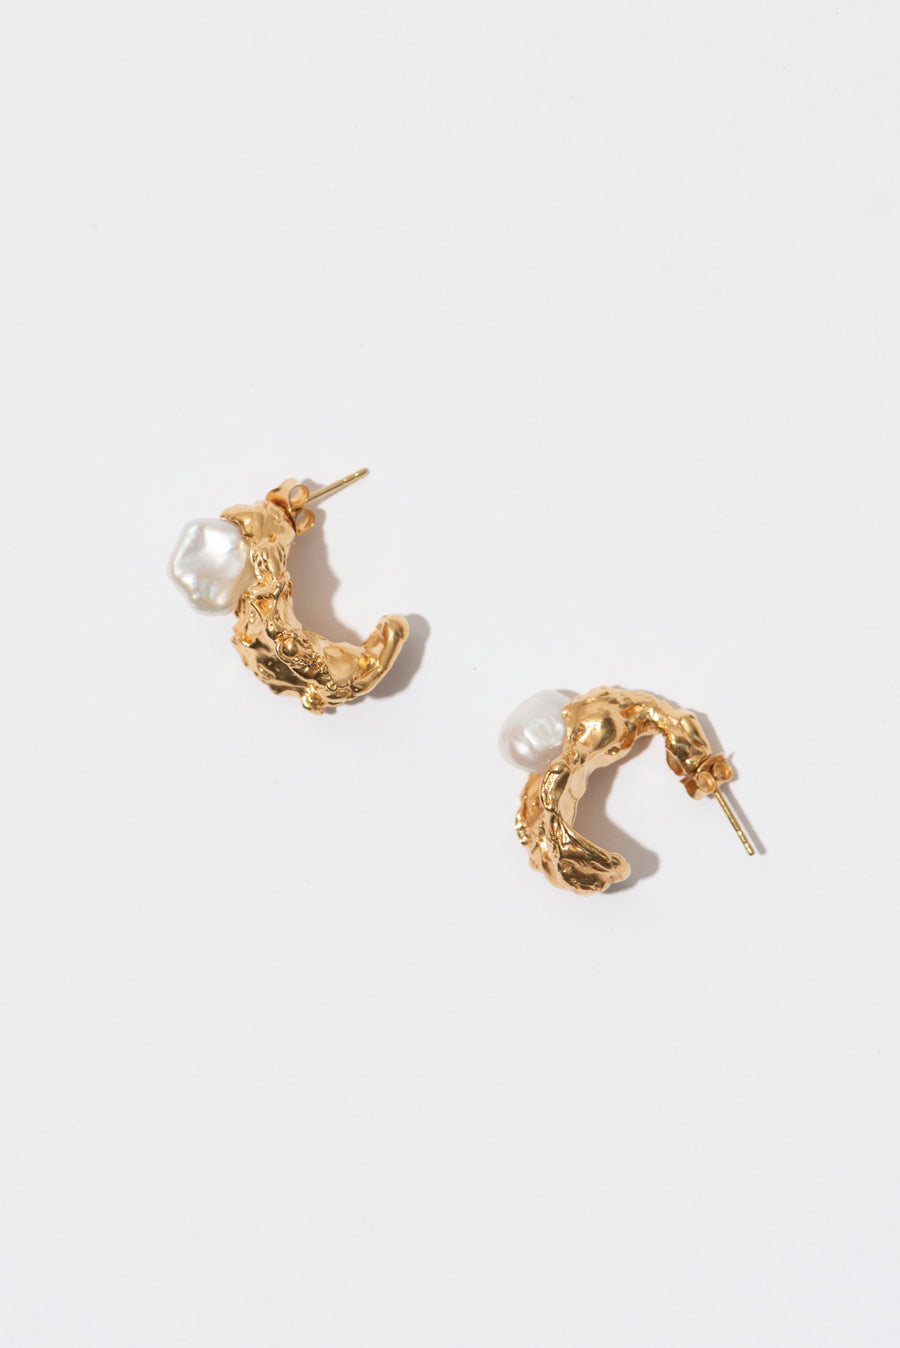 The Organic Hoop Pearl Earrings | Pair